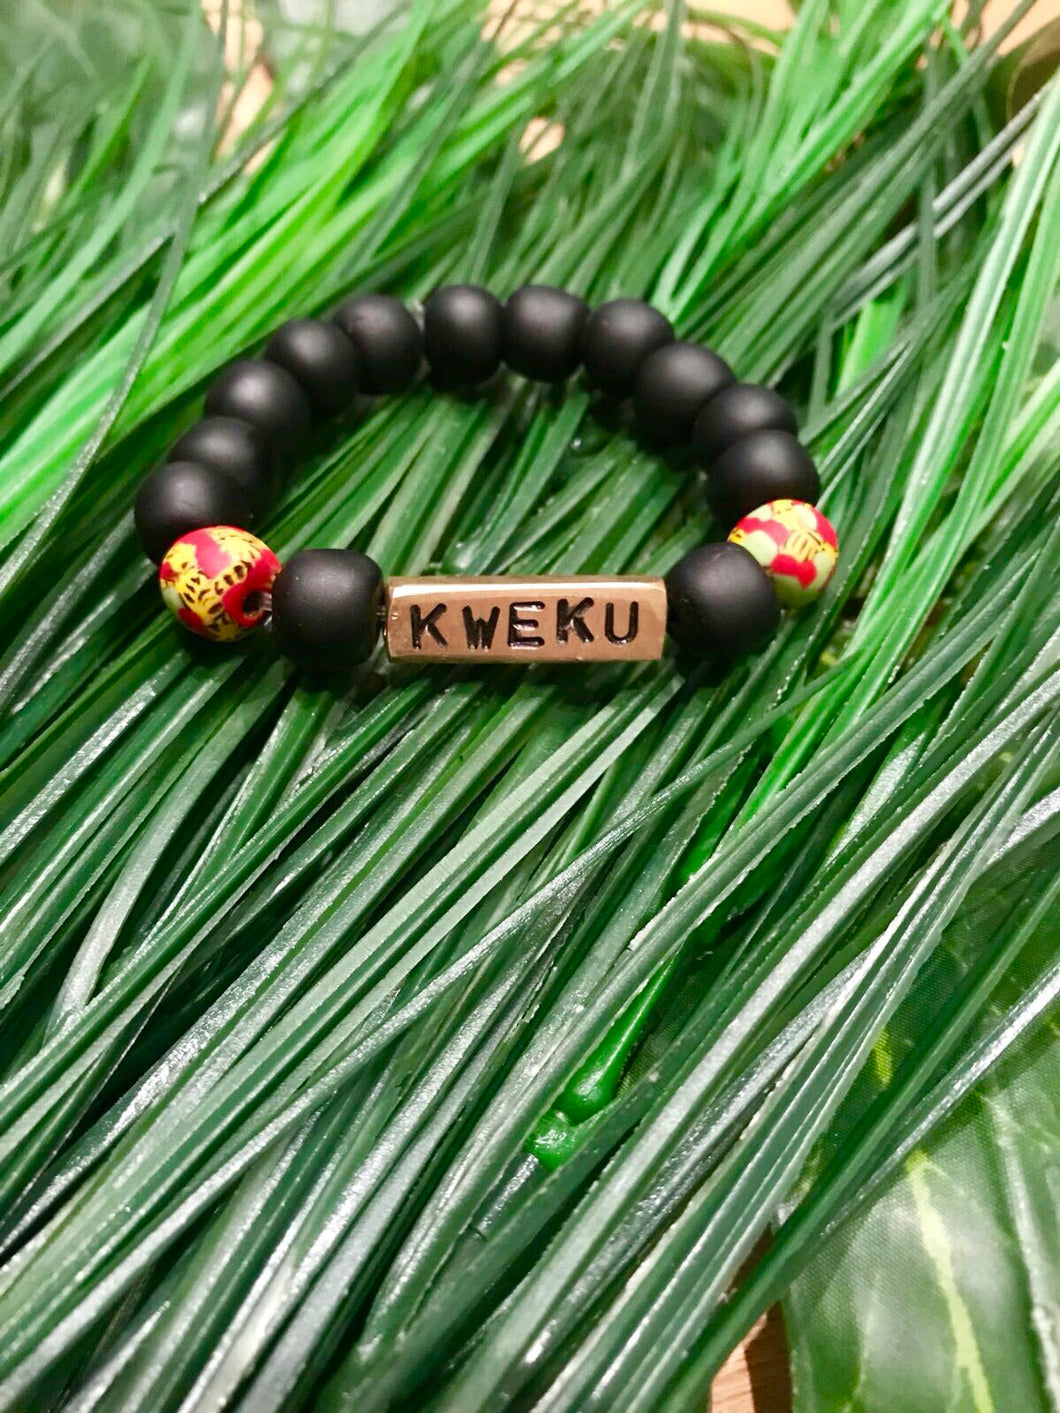 “Kweku” name bracelet